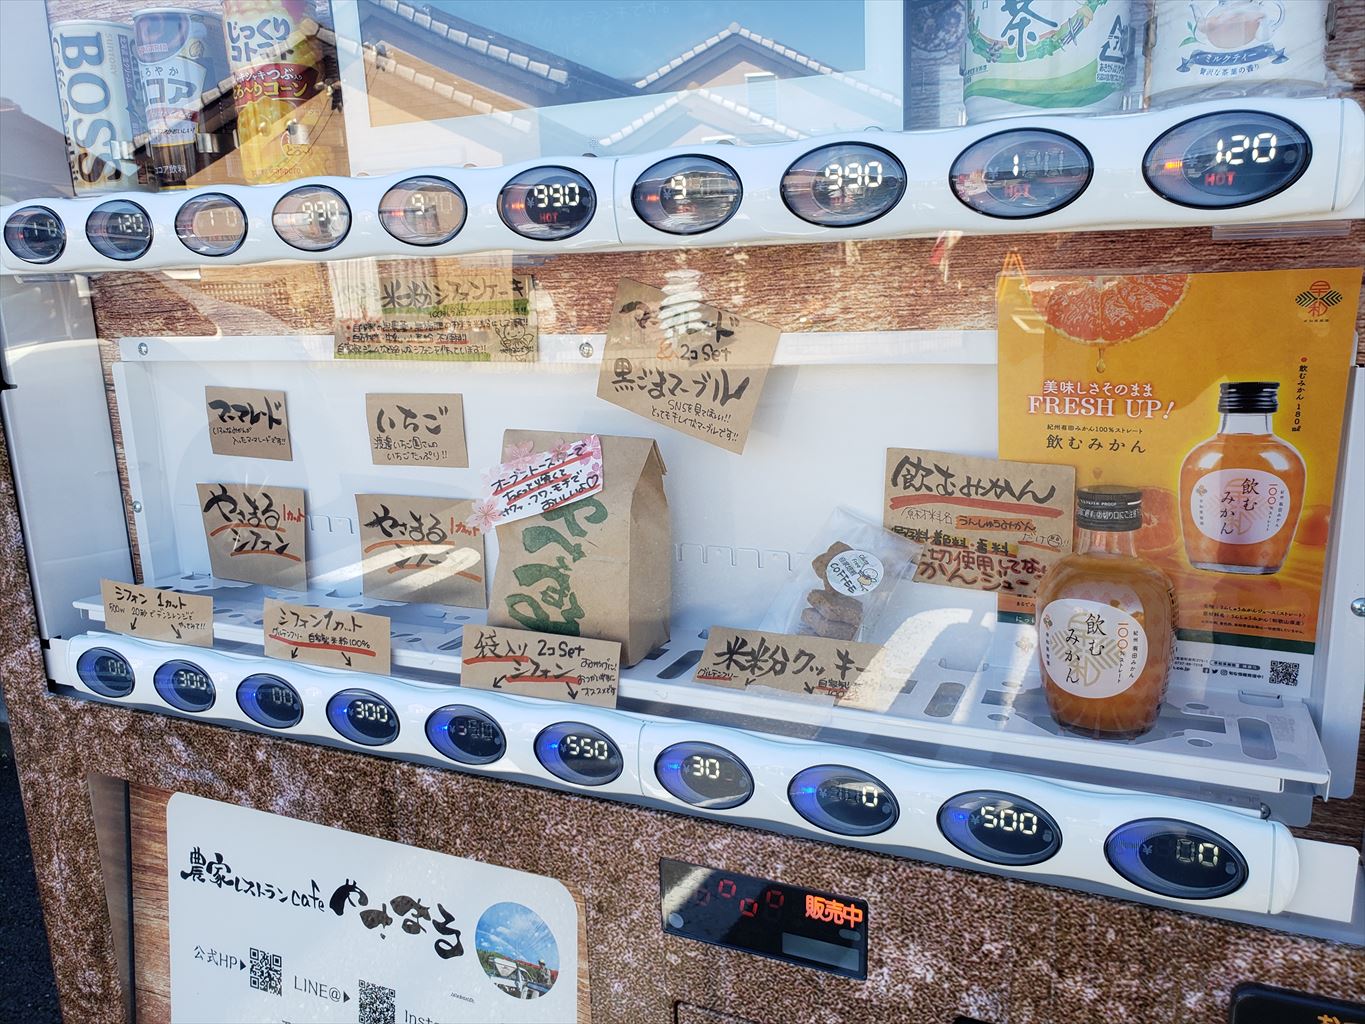 非接触で購入ok やさまるの米粉シフォンケーキを自販機で 木更津 君津 袖ケ浦の情報をお伝えするブログ なかぶぷろじぇくと